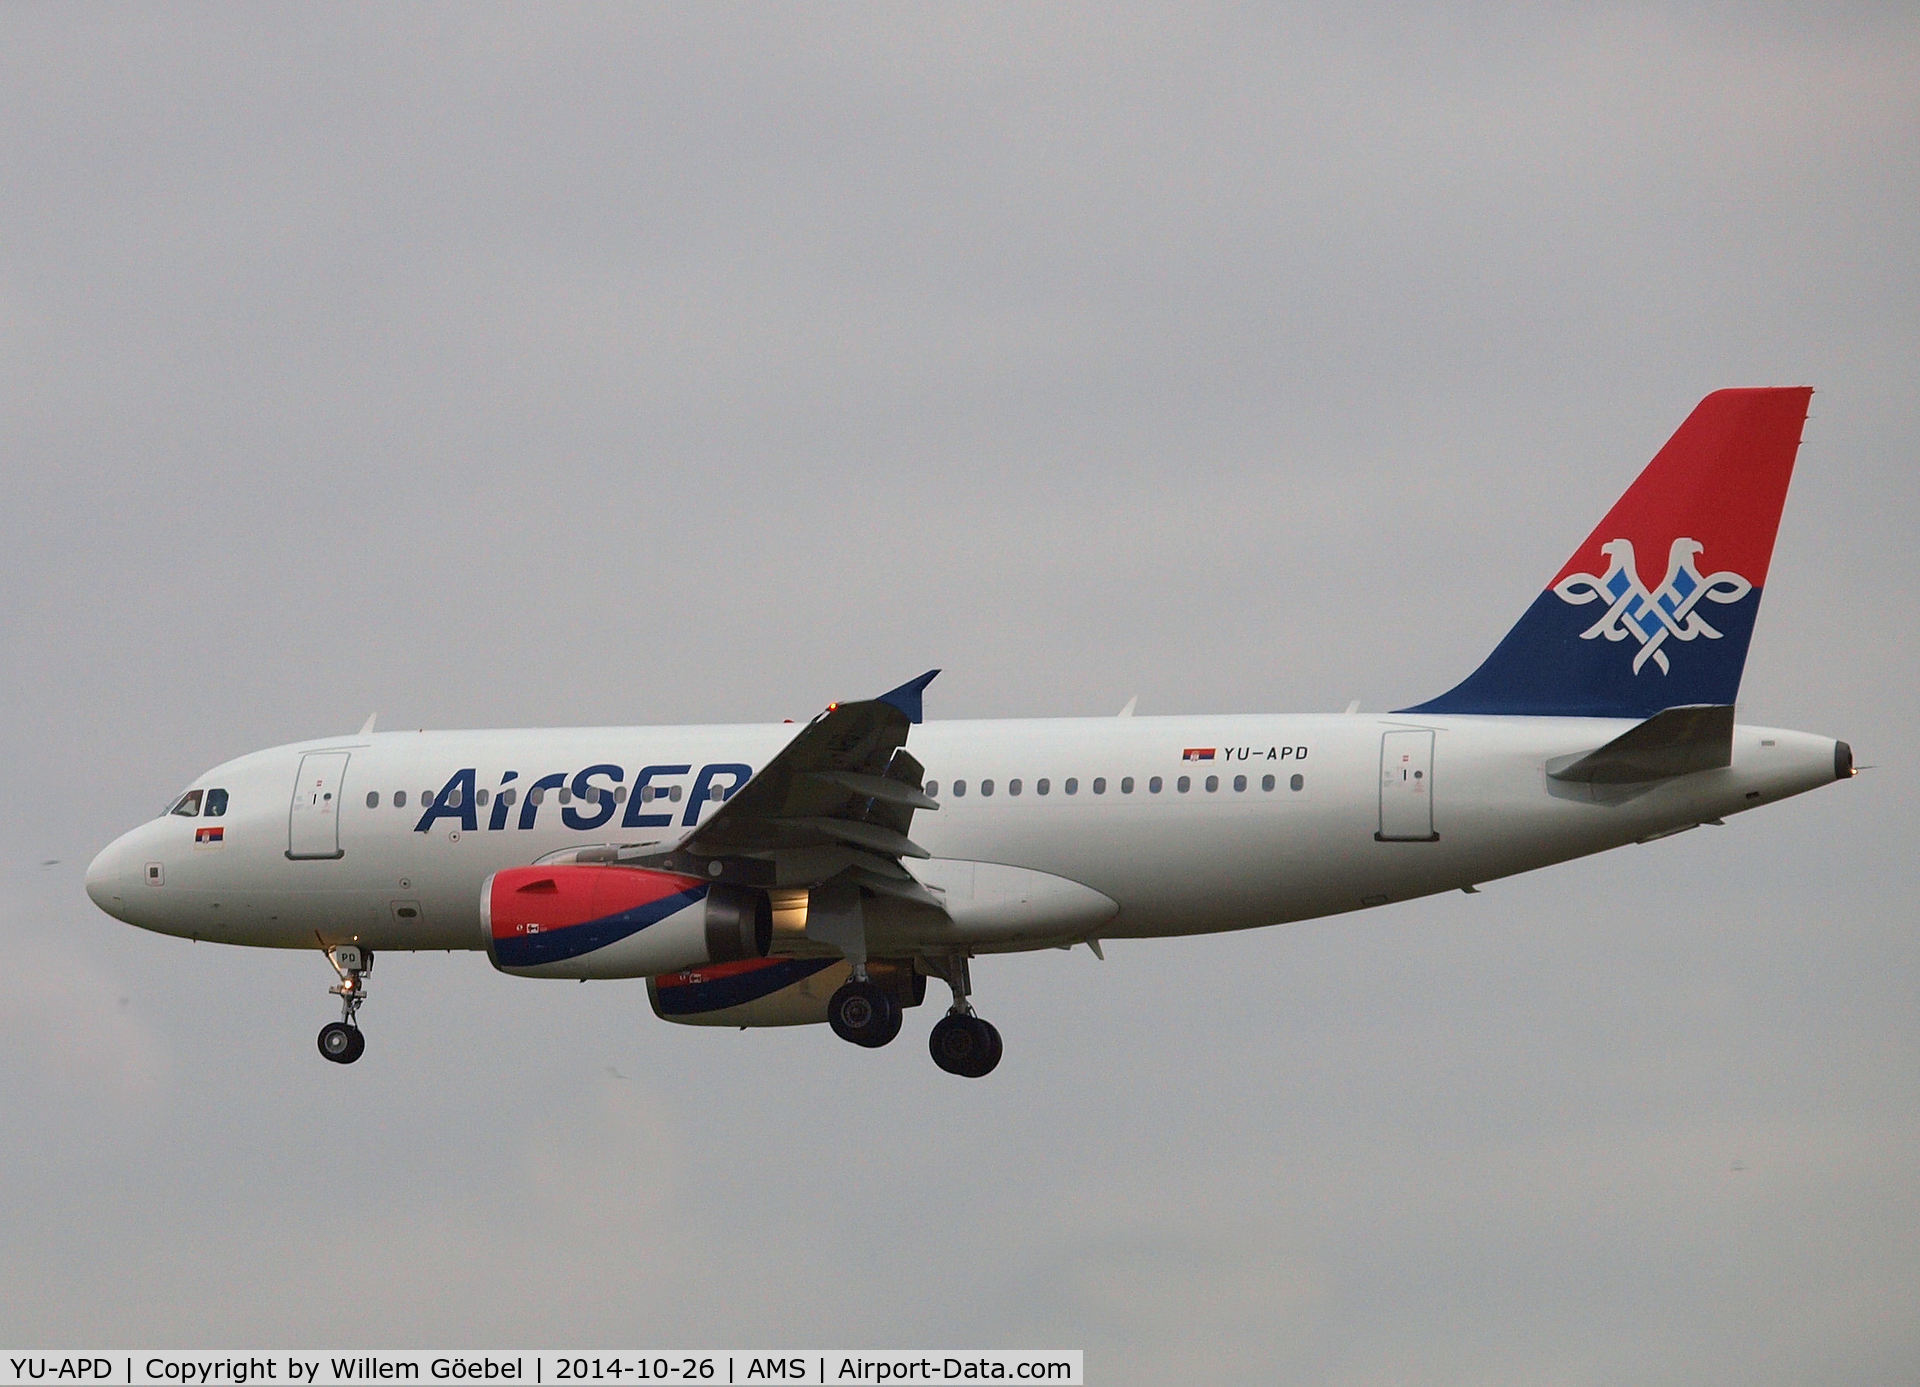 YU-APD, 2004 Airbus A319-132 C/N 2335, Landing on runway 18C of Amsterdam Airport